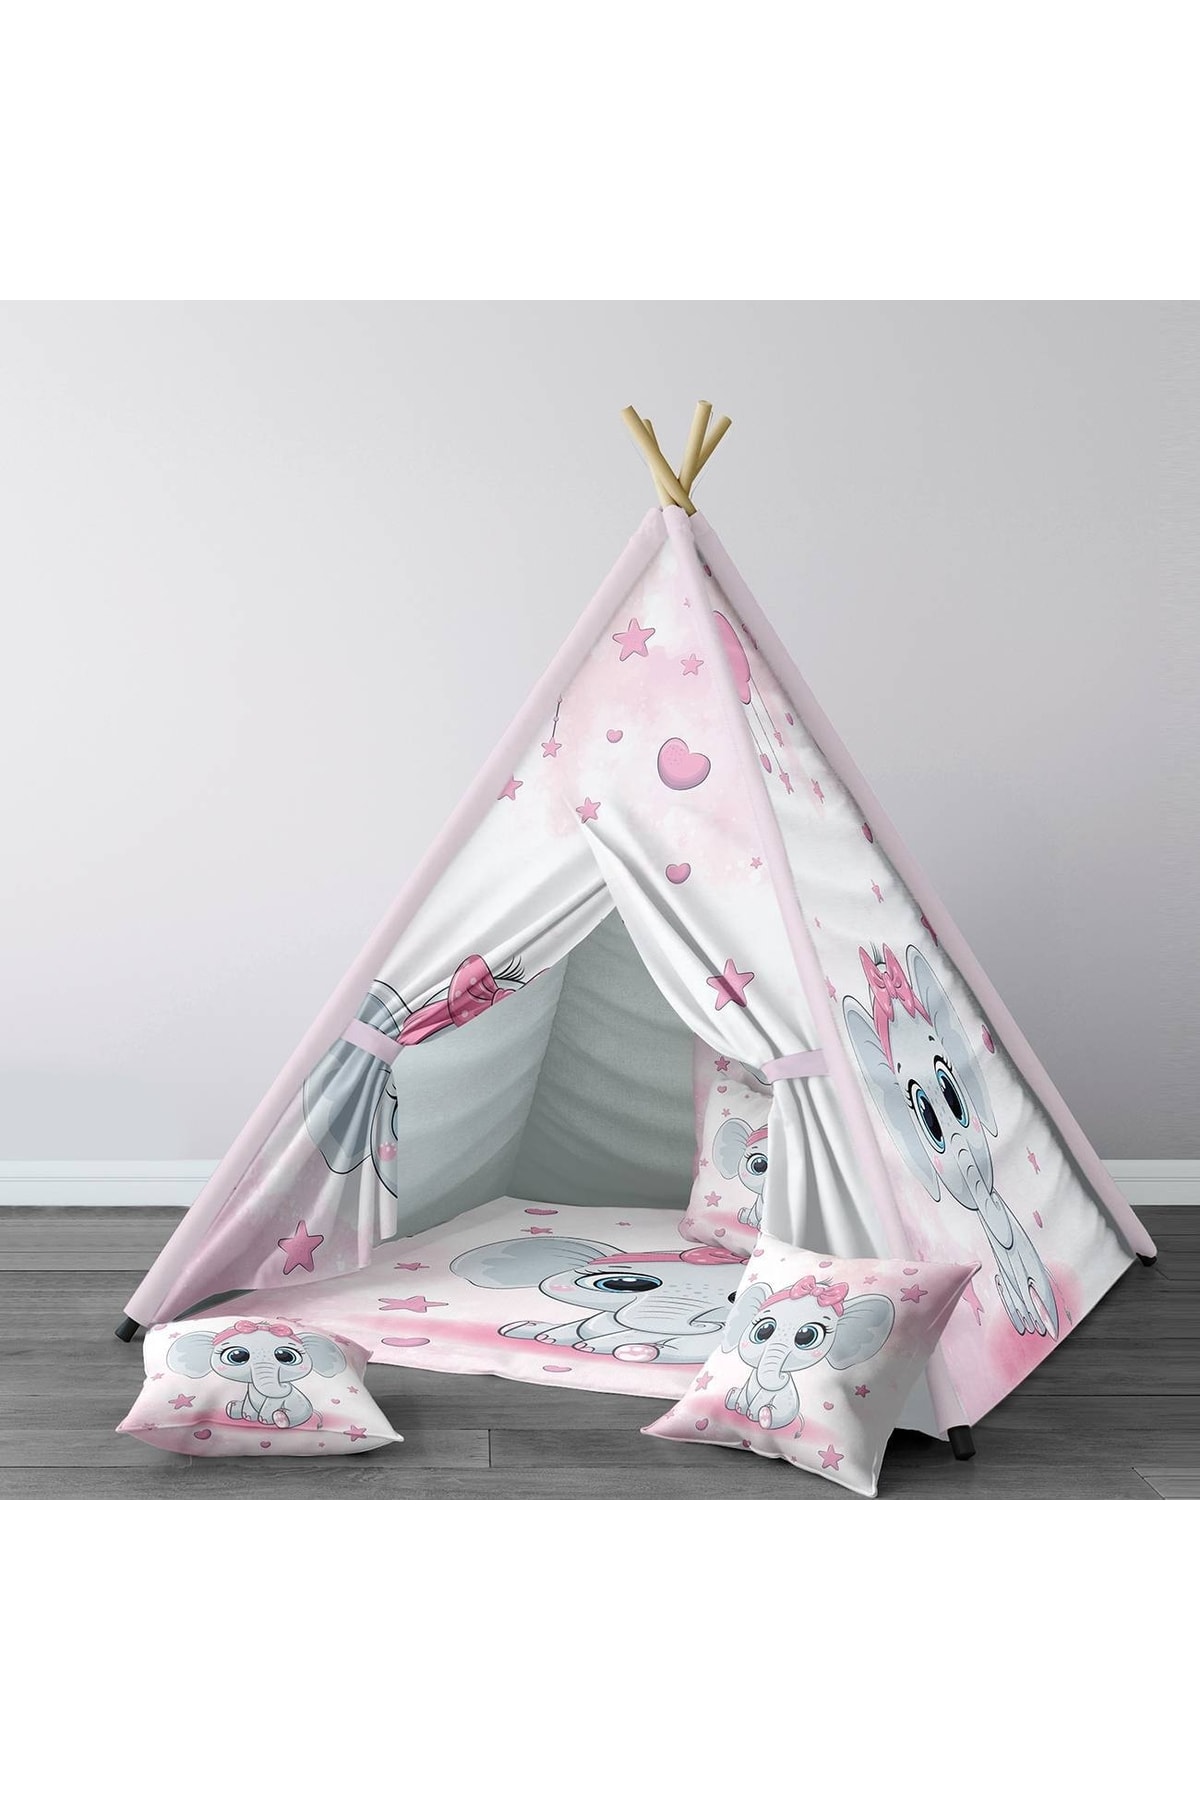 HET Concept Pembe Bebek, Çocuk Odası Minderli/mindersiz Oyun Evi, Çadırı Model 0211